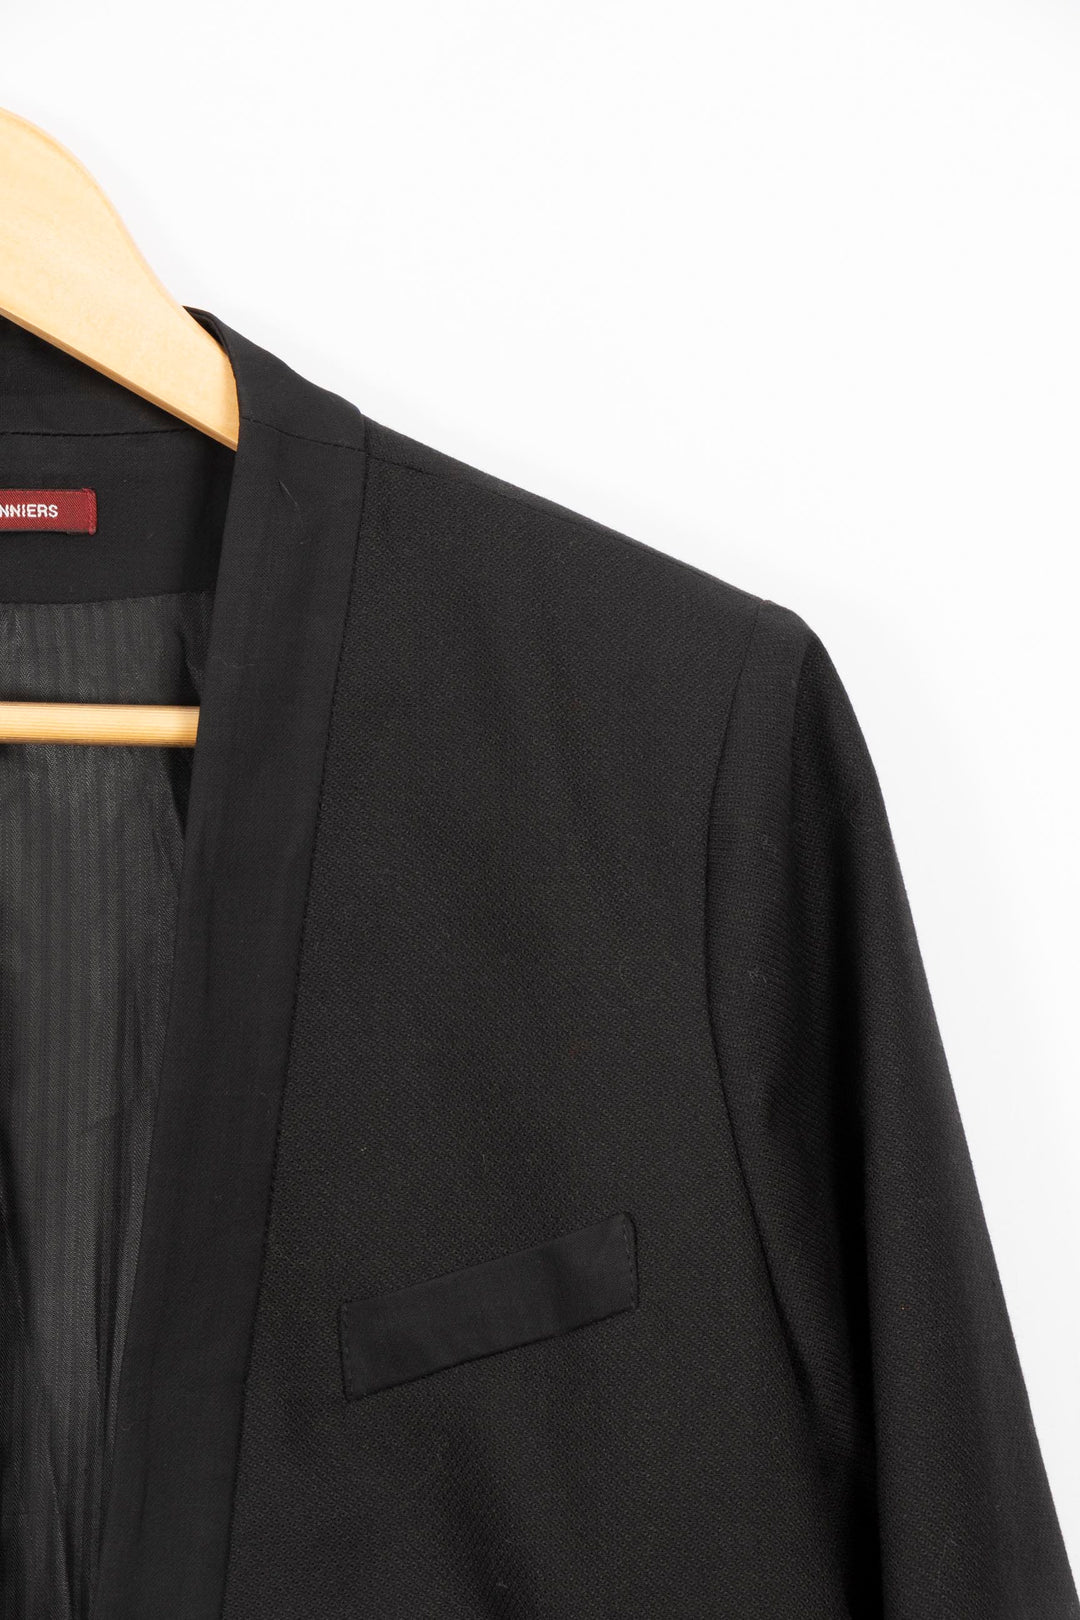 Plain black suit jacket - M